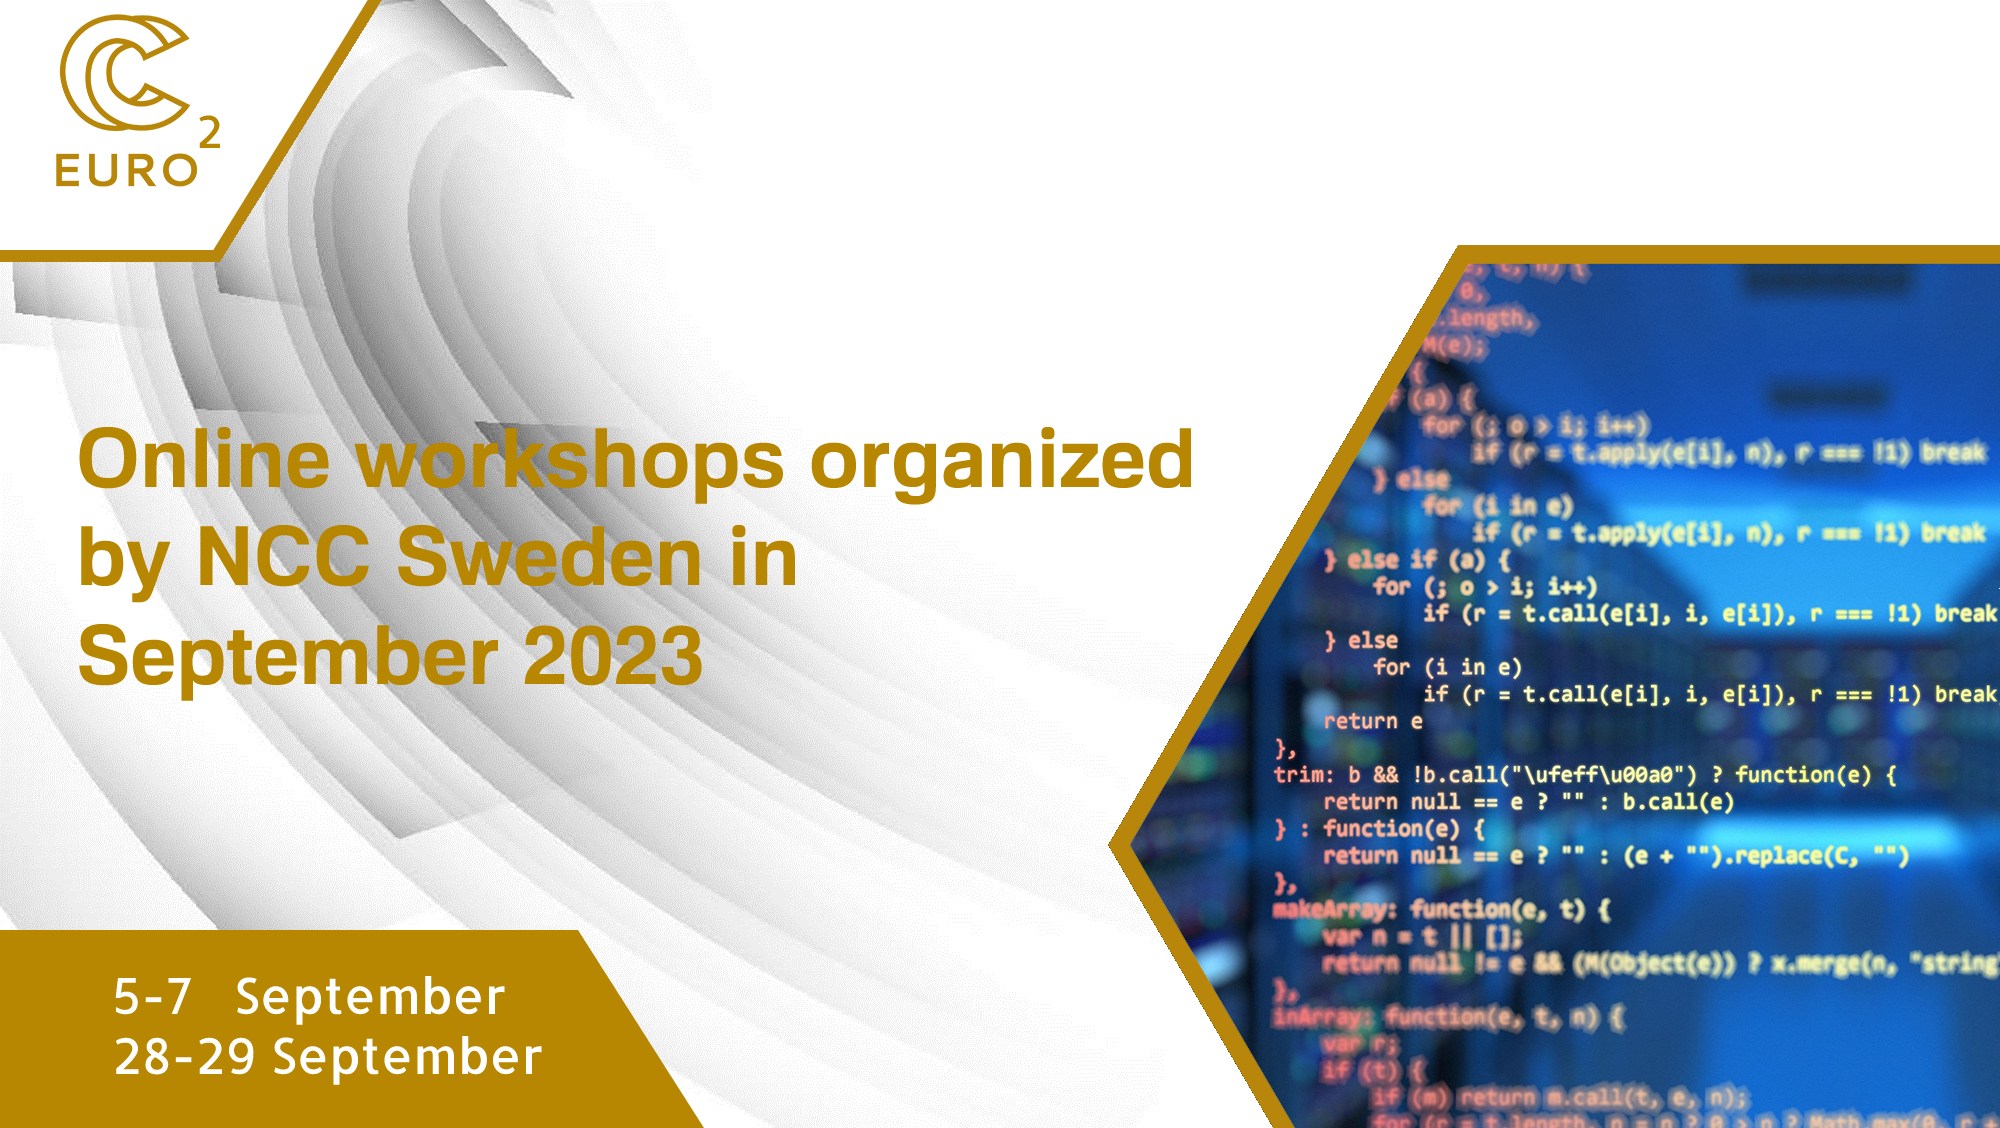 Online workshops organized by NCC Sweden in September 2023